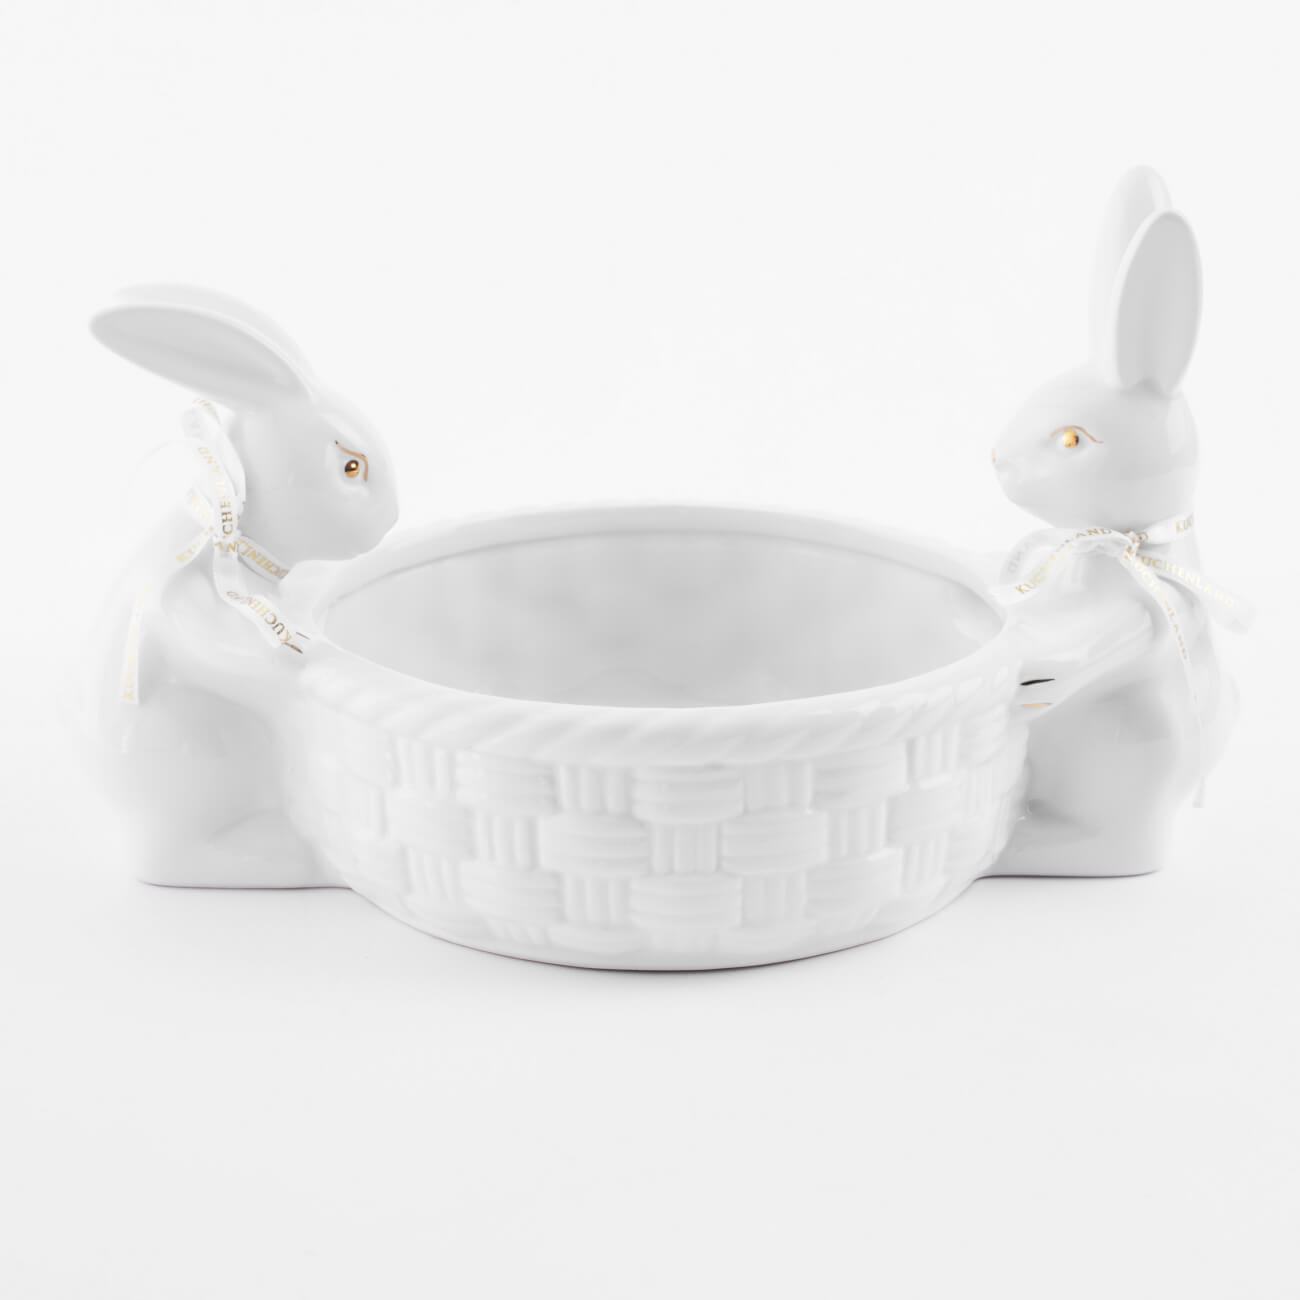 емкость для хранения 15х14 см 390 мл керамика белая кролики easter gold Конфетница, 28х16 см, керамика, бело-золотистая, Кролики с плетенной корзиной, Easter gold